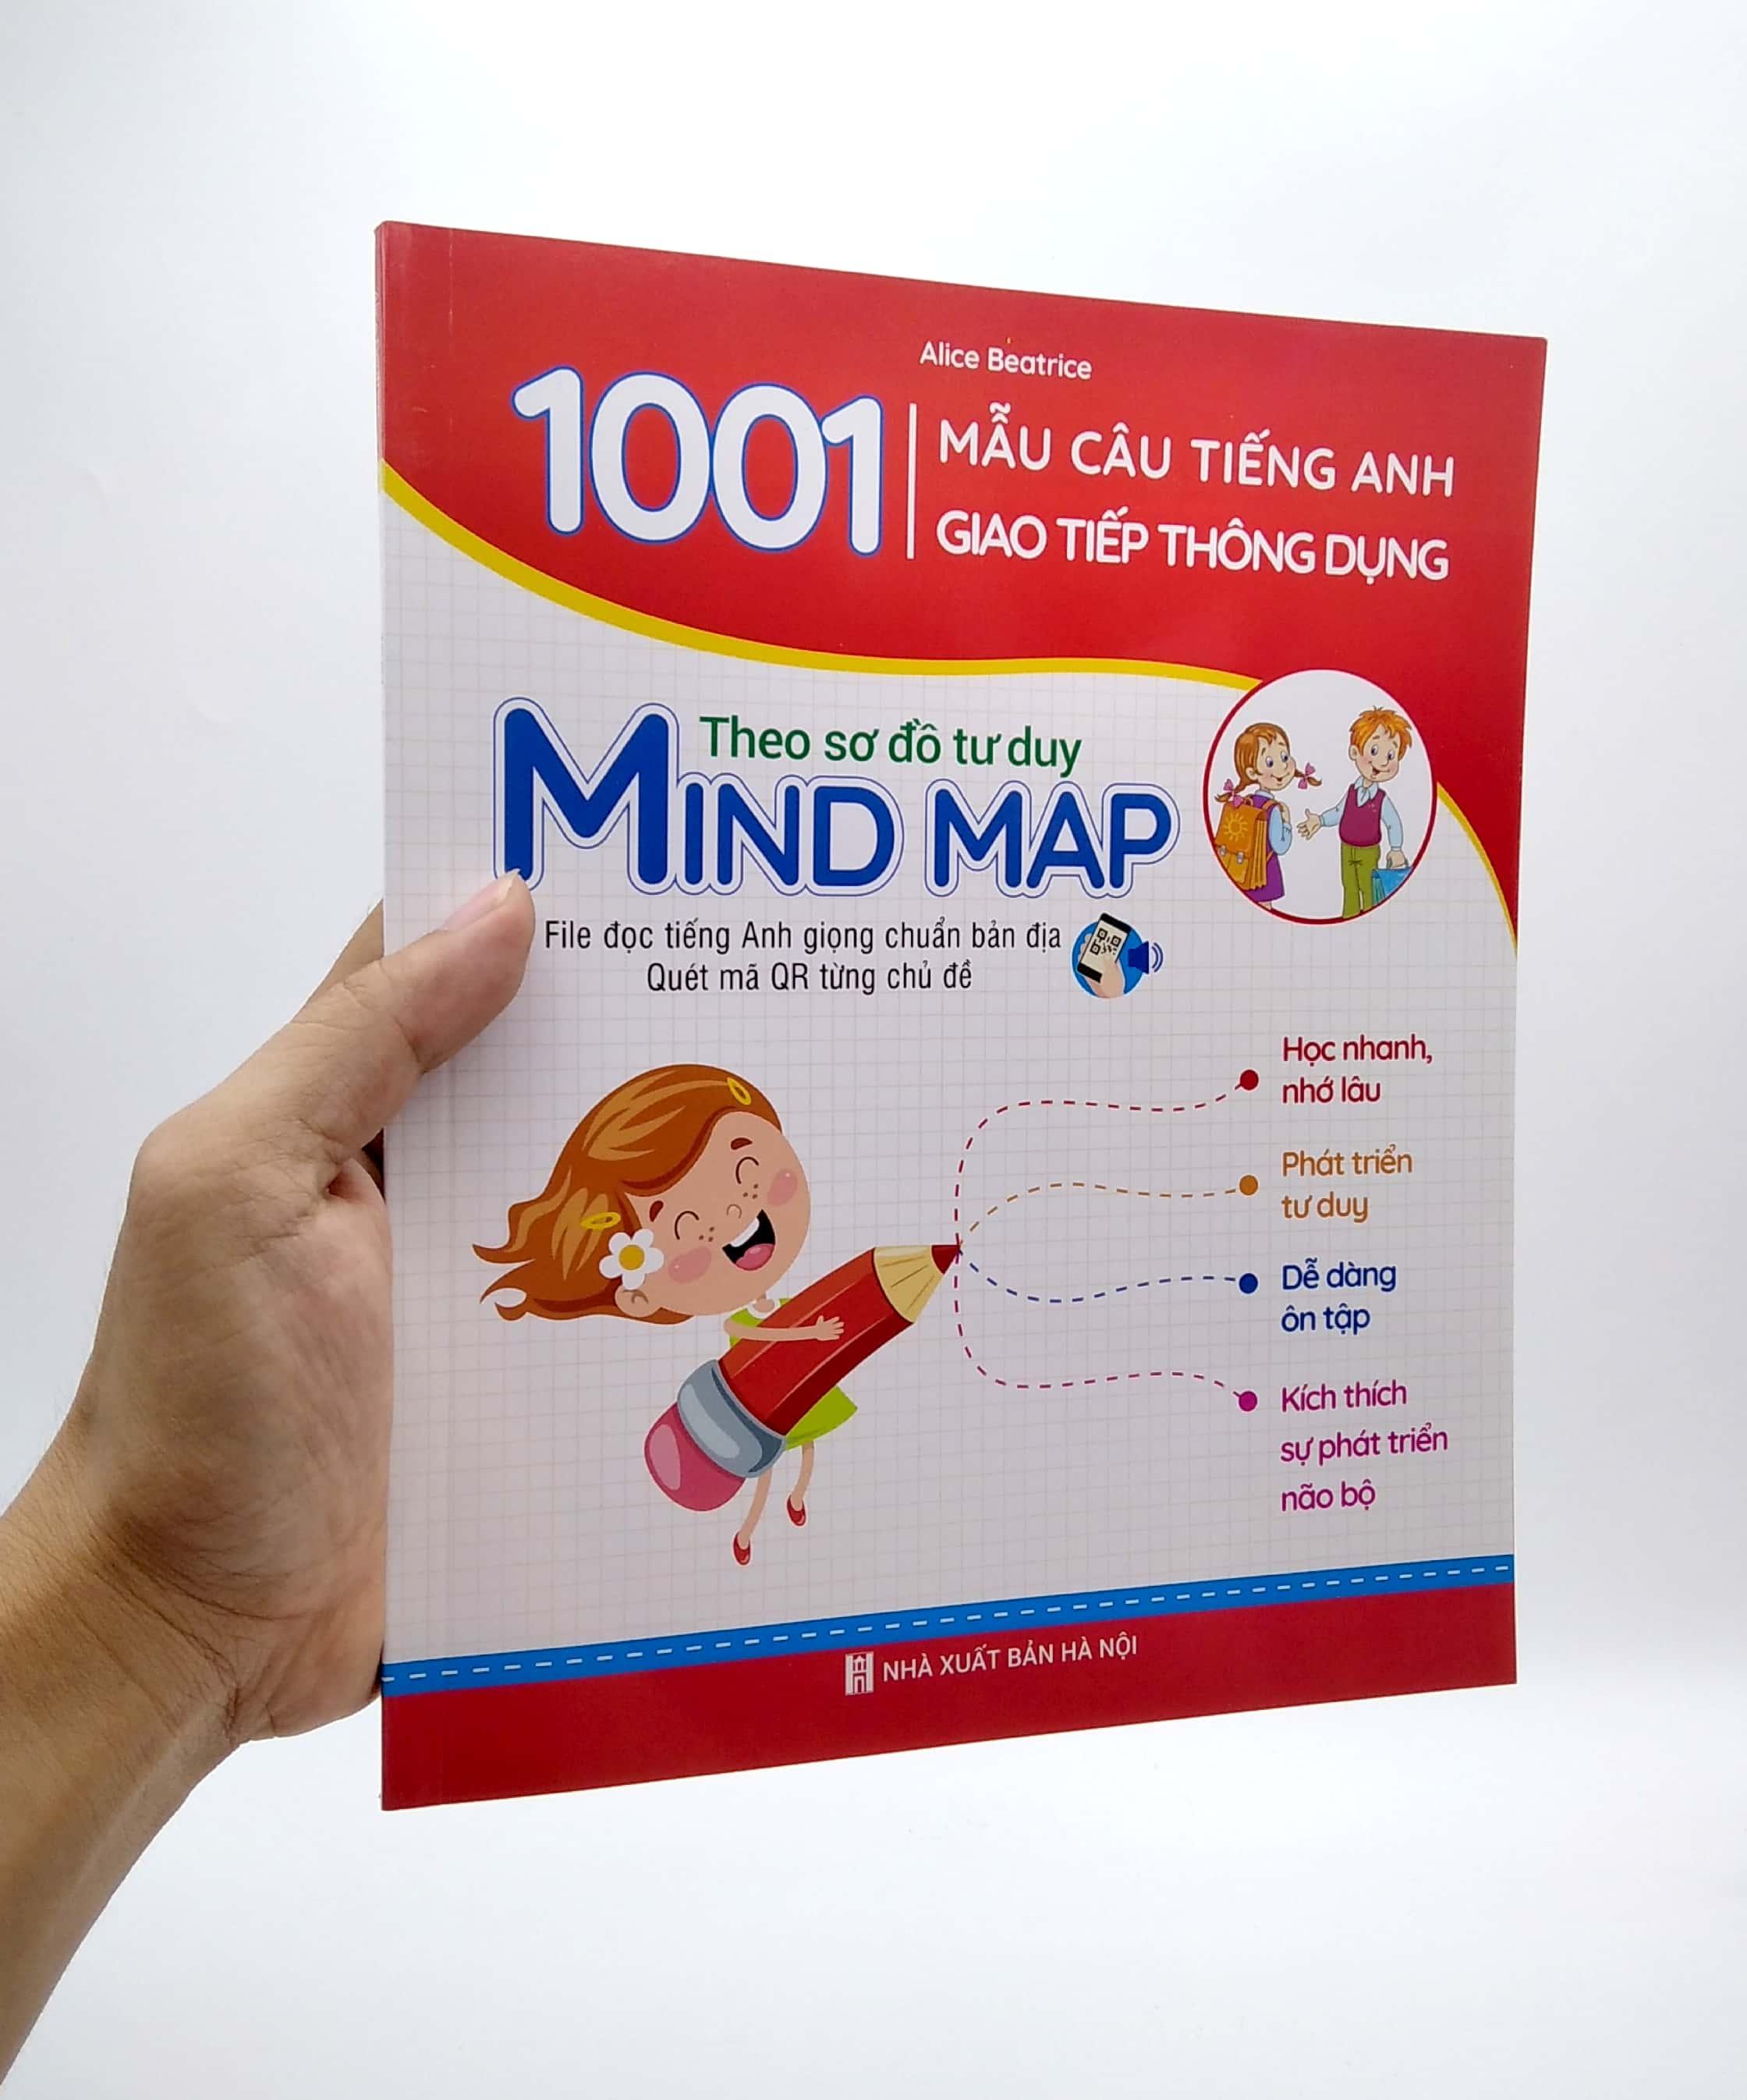 1001 Mẫu Câu Tiếng Anh Giao Tiếp Thông Dụng - Theo Sơ Đồ Tư Duy Mind Map